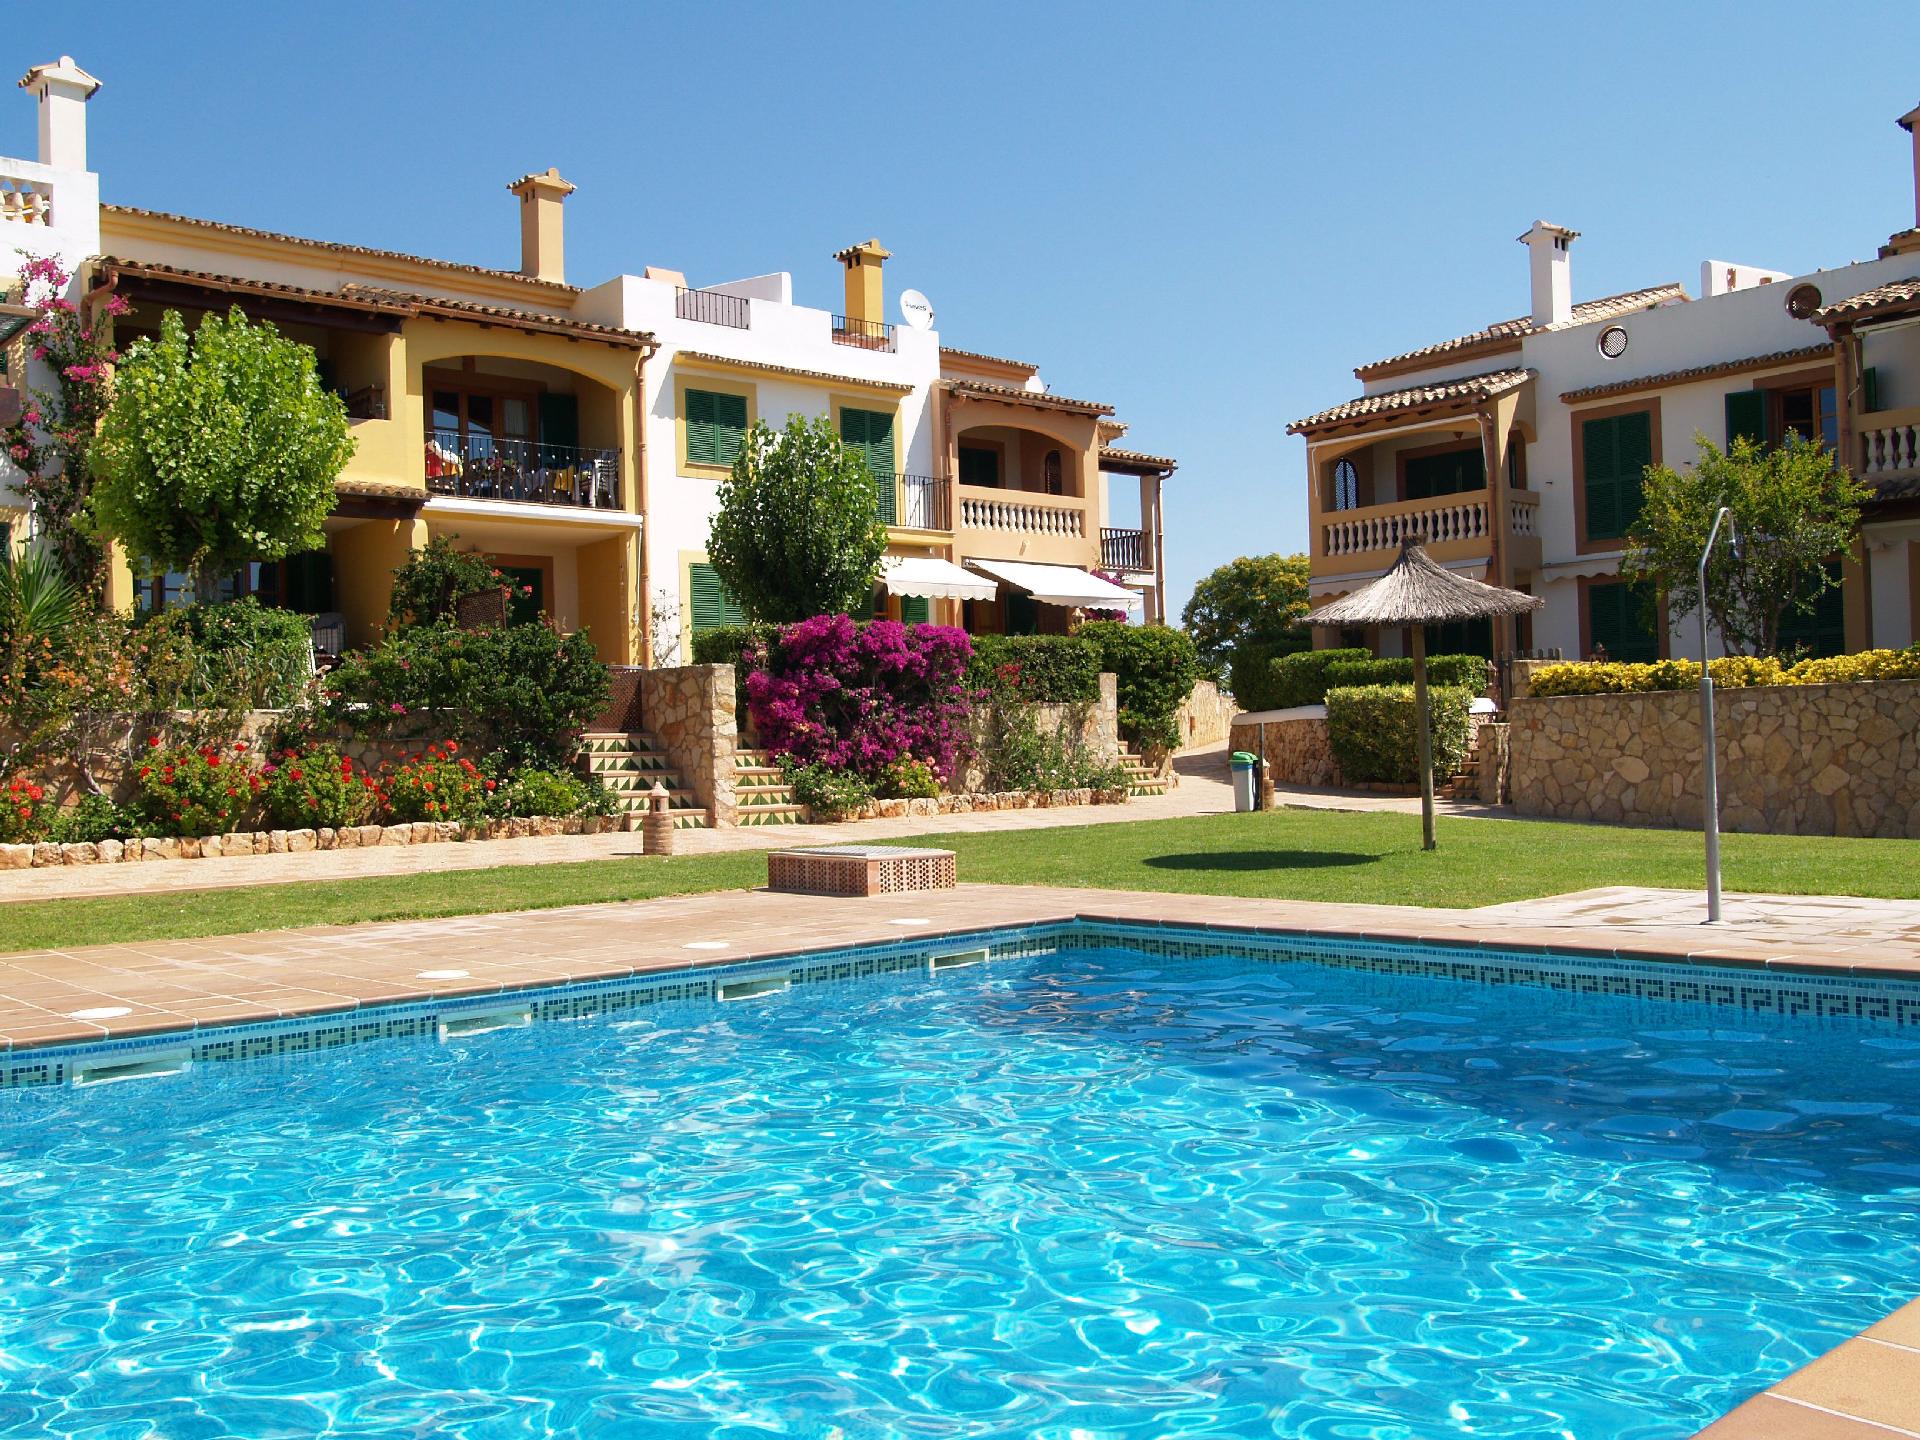 Ferienwohnung für 4 Personen ca. 85 m² i Ferienwohnung  Mallorca